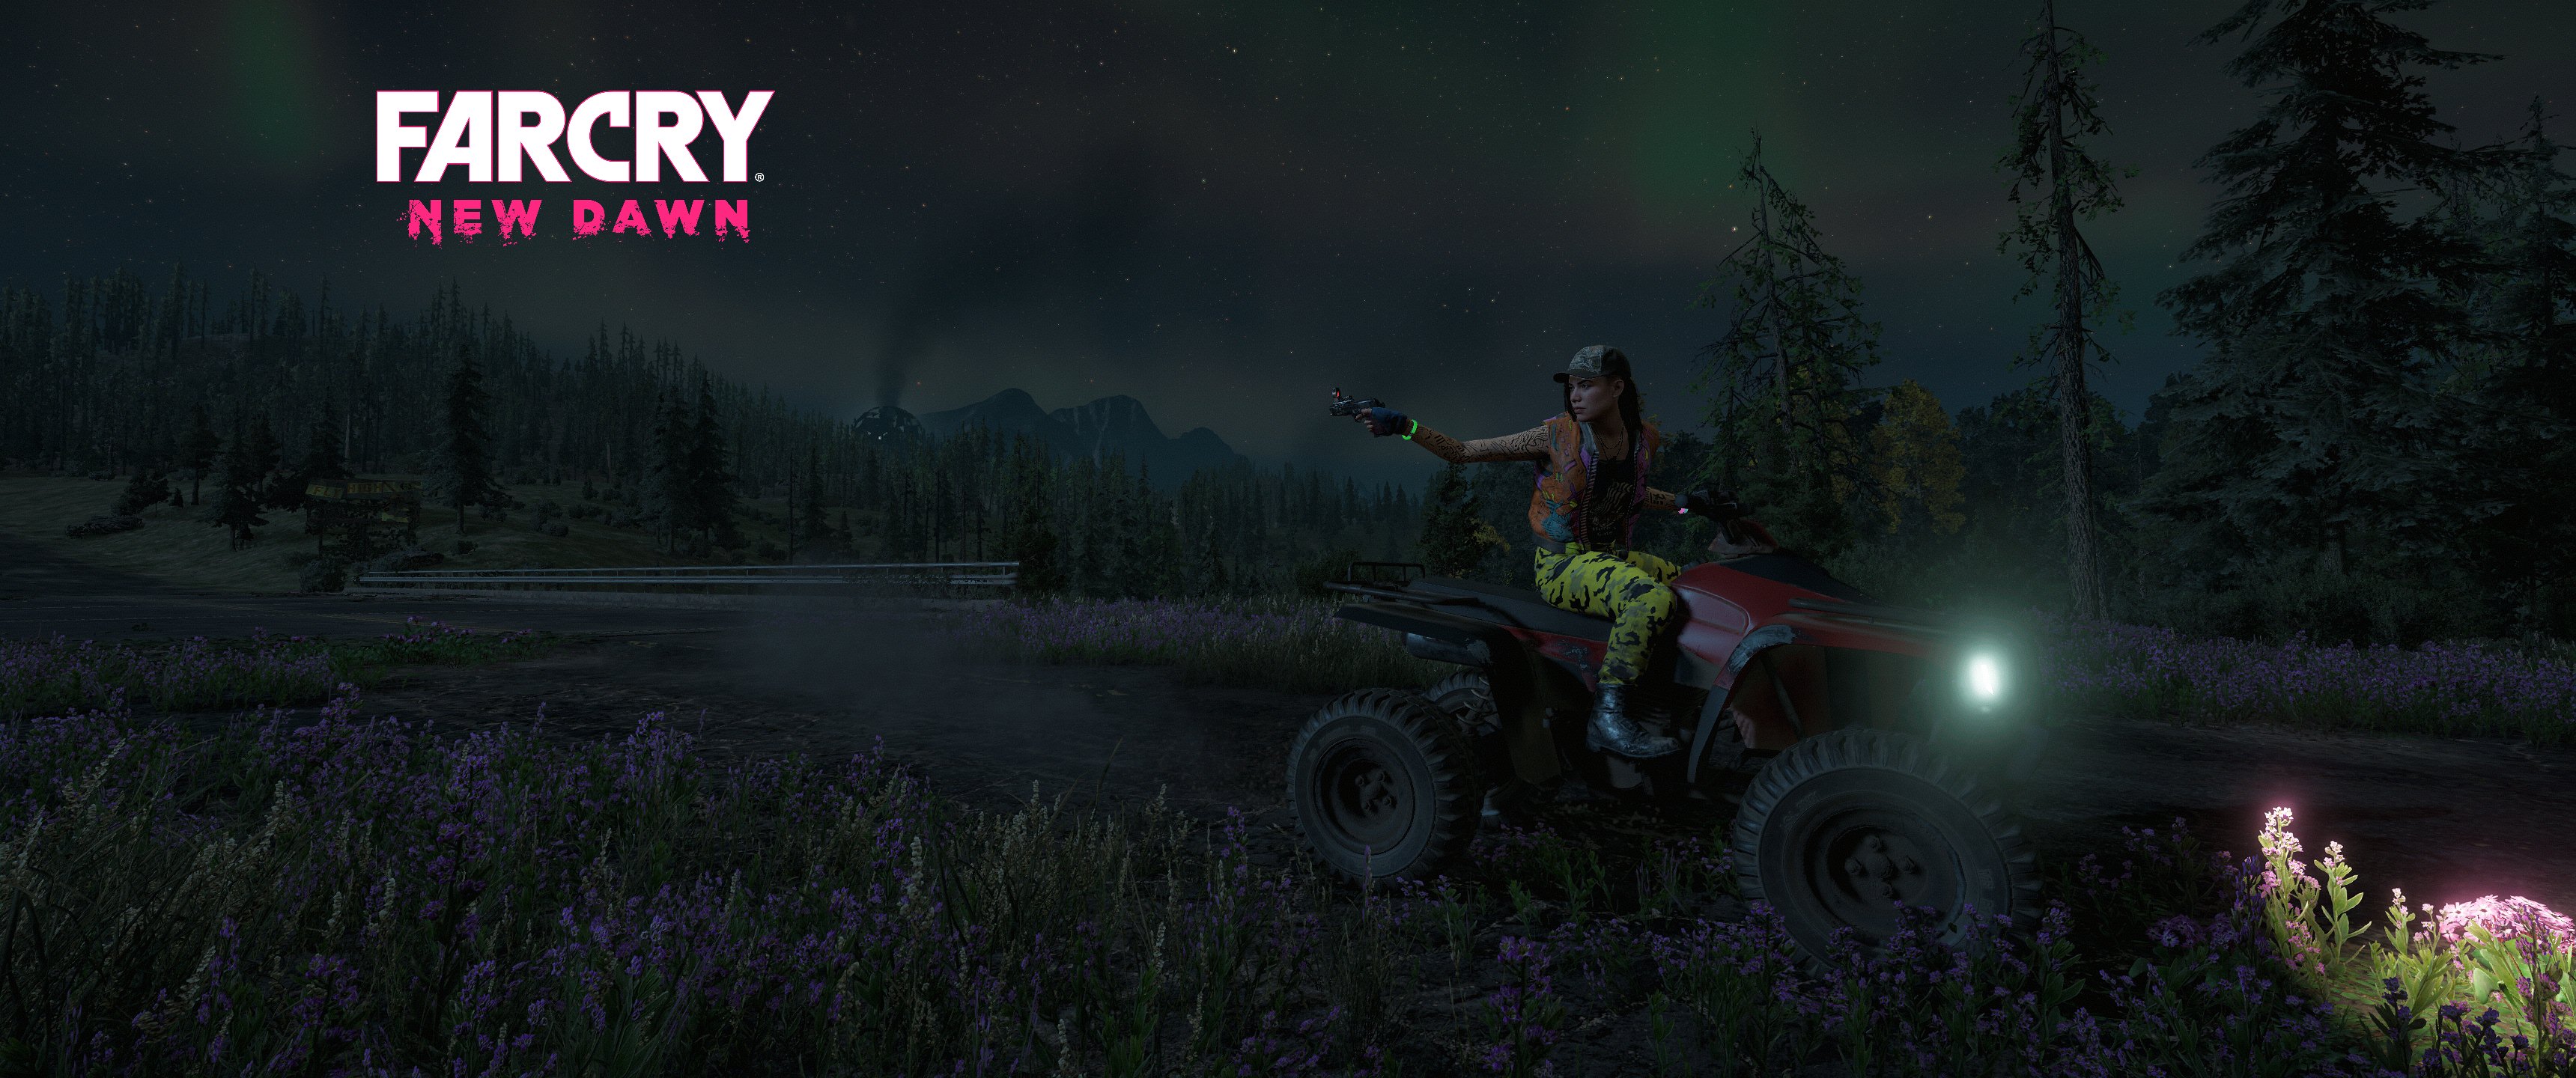 Far Cry New Dawn Ultrawide Video Games 3440x1440